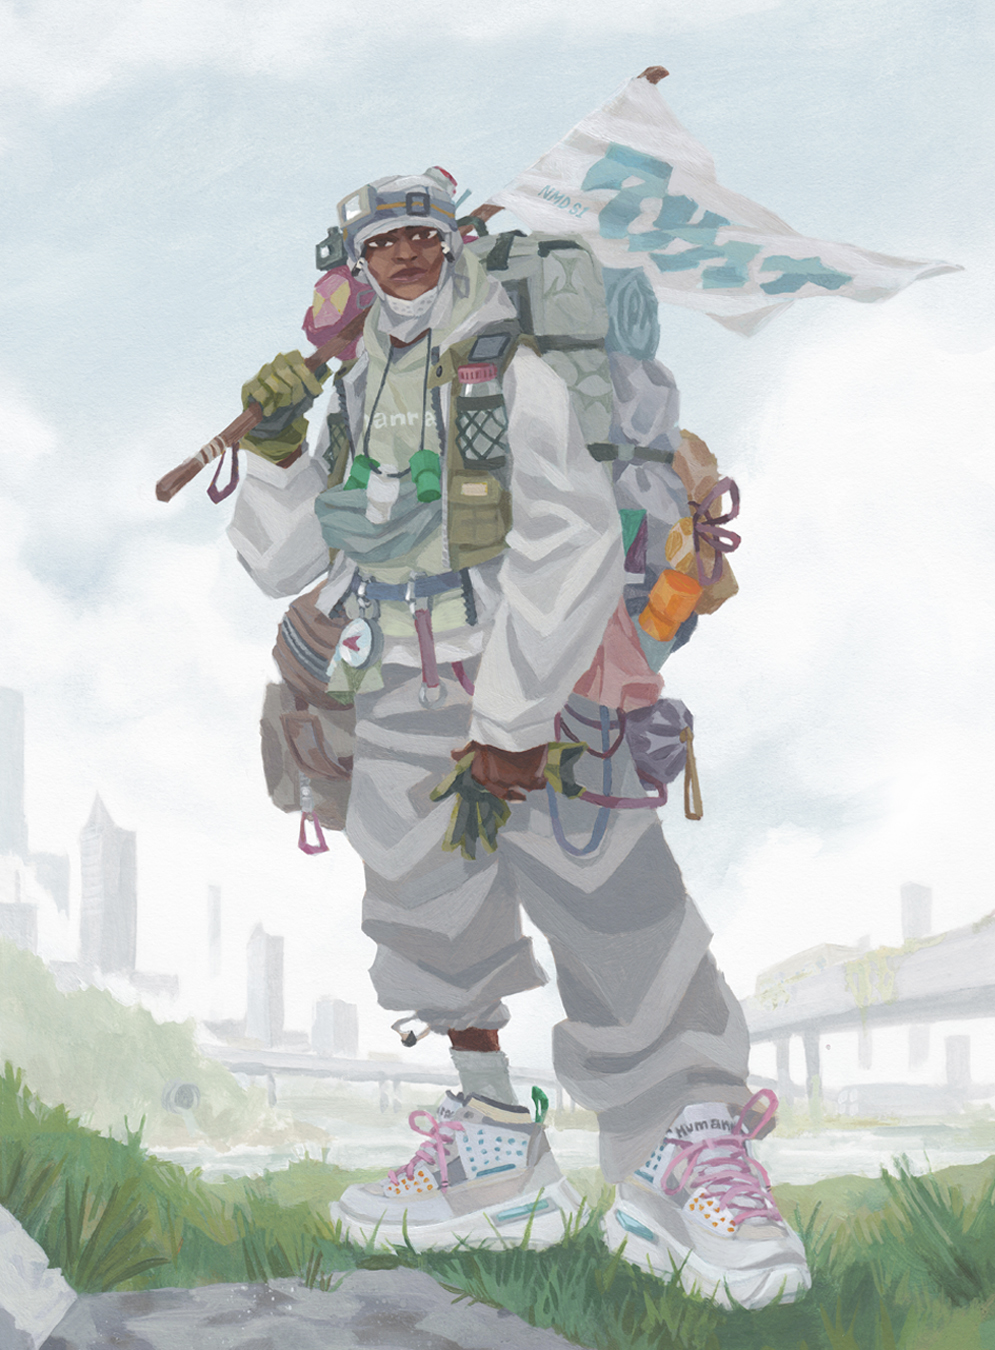 Obra de arte para Humanrace de un hombre con un chándal blanco con zapatillas deportivas, una mochila de viaje y sosteniendo una bandera blanca.